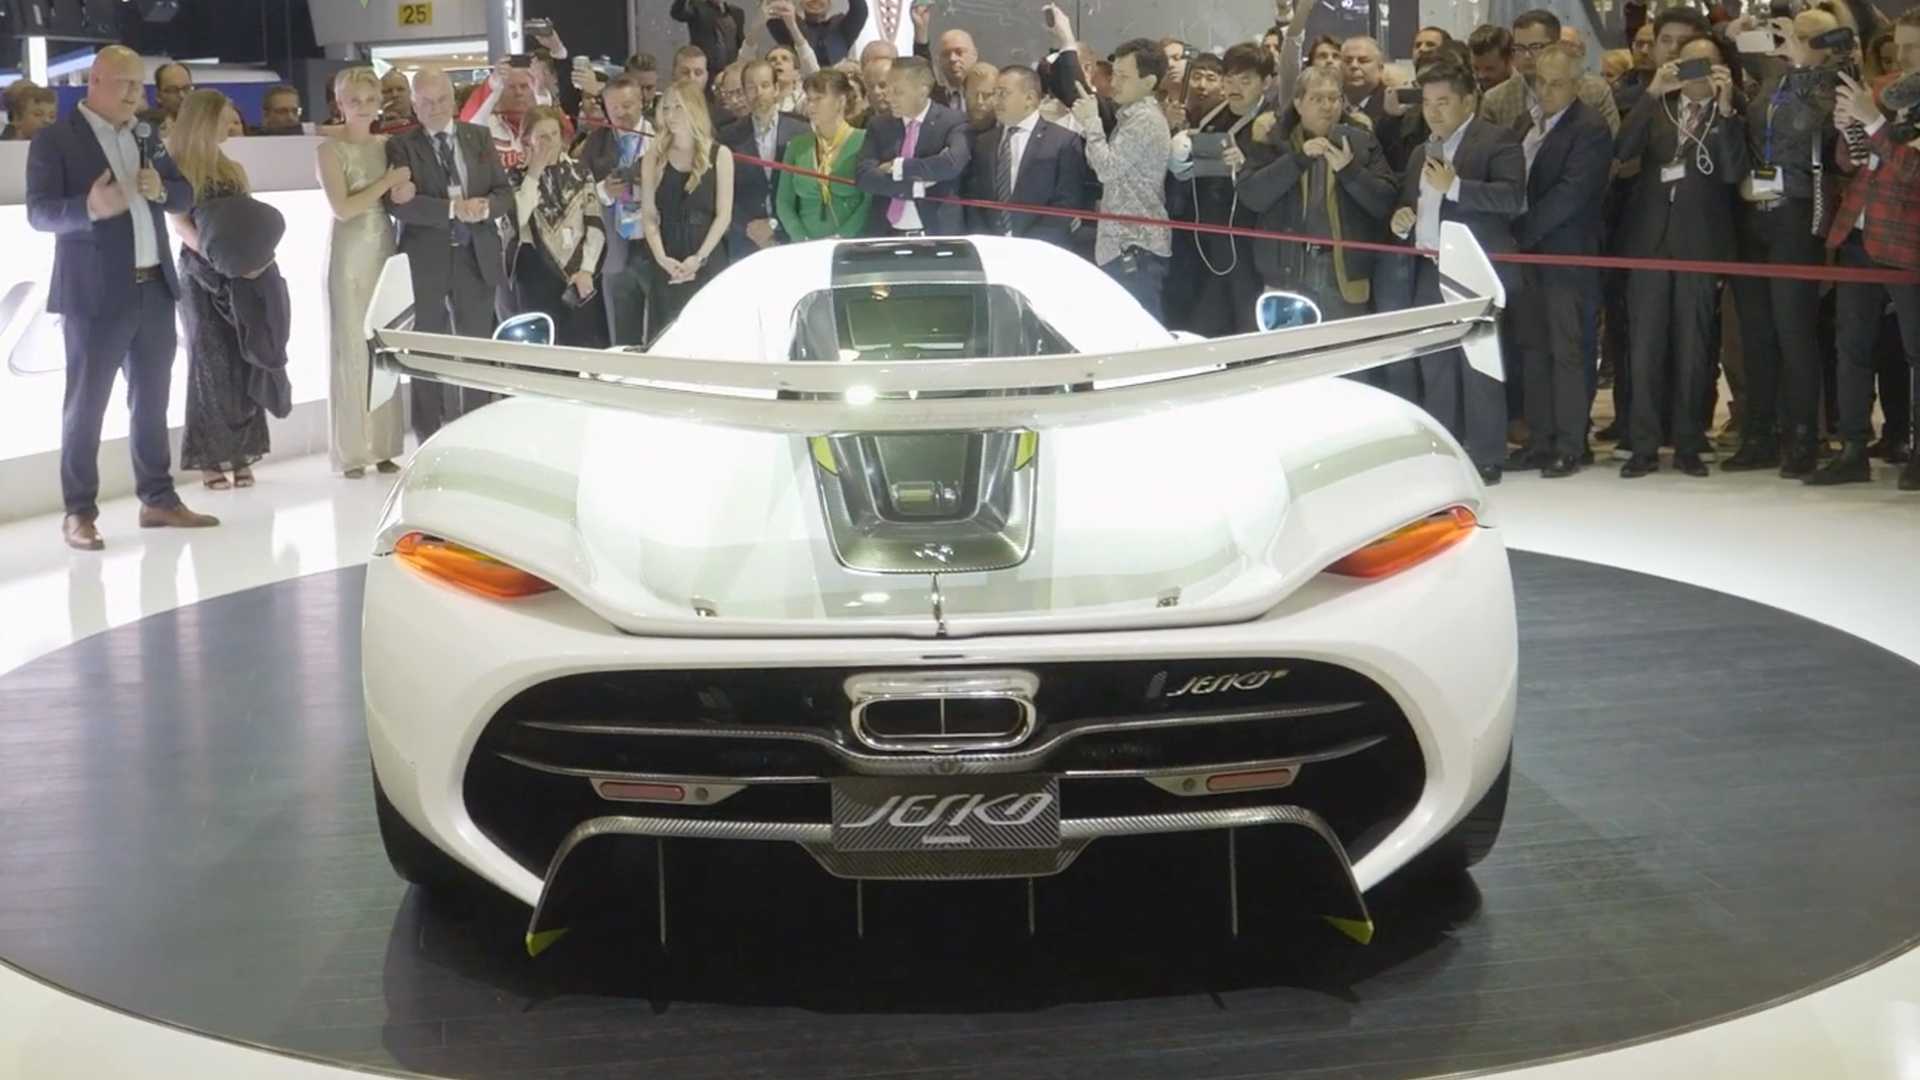 16-کونیگ زگ  جسکو در نمایشگاه خودروی ژنو 2019 رونمایی شد،هاپیر کاری با 482 کیلومتر